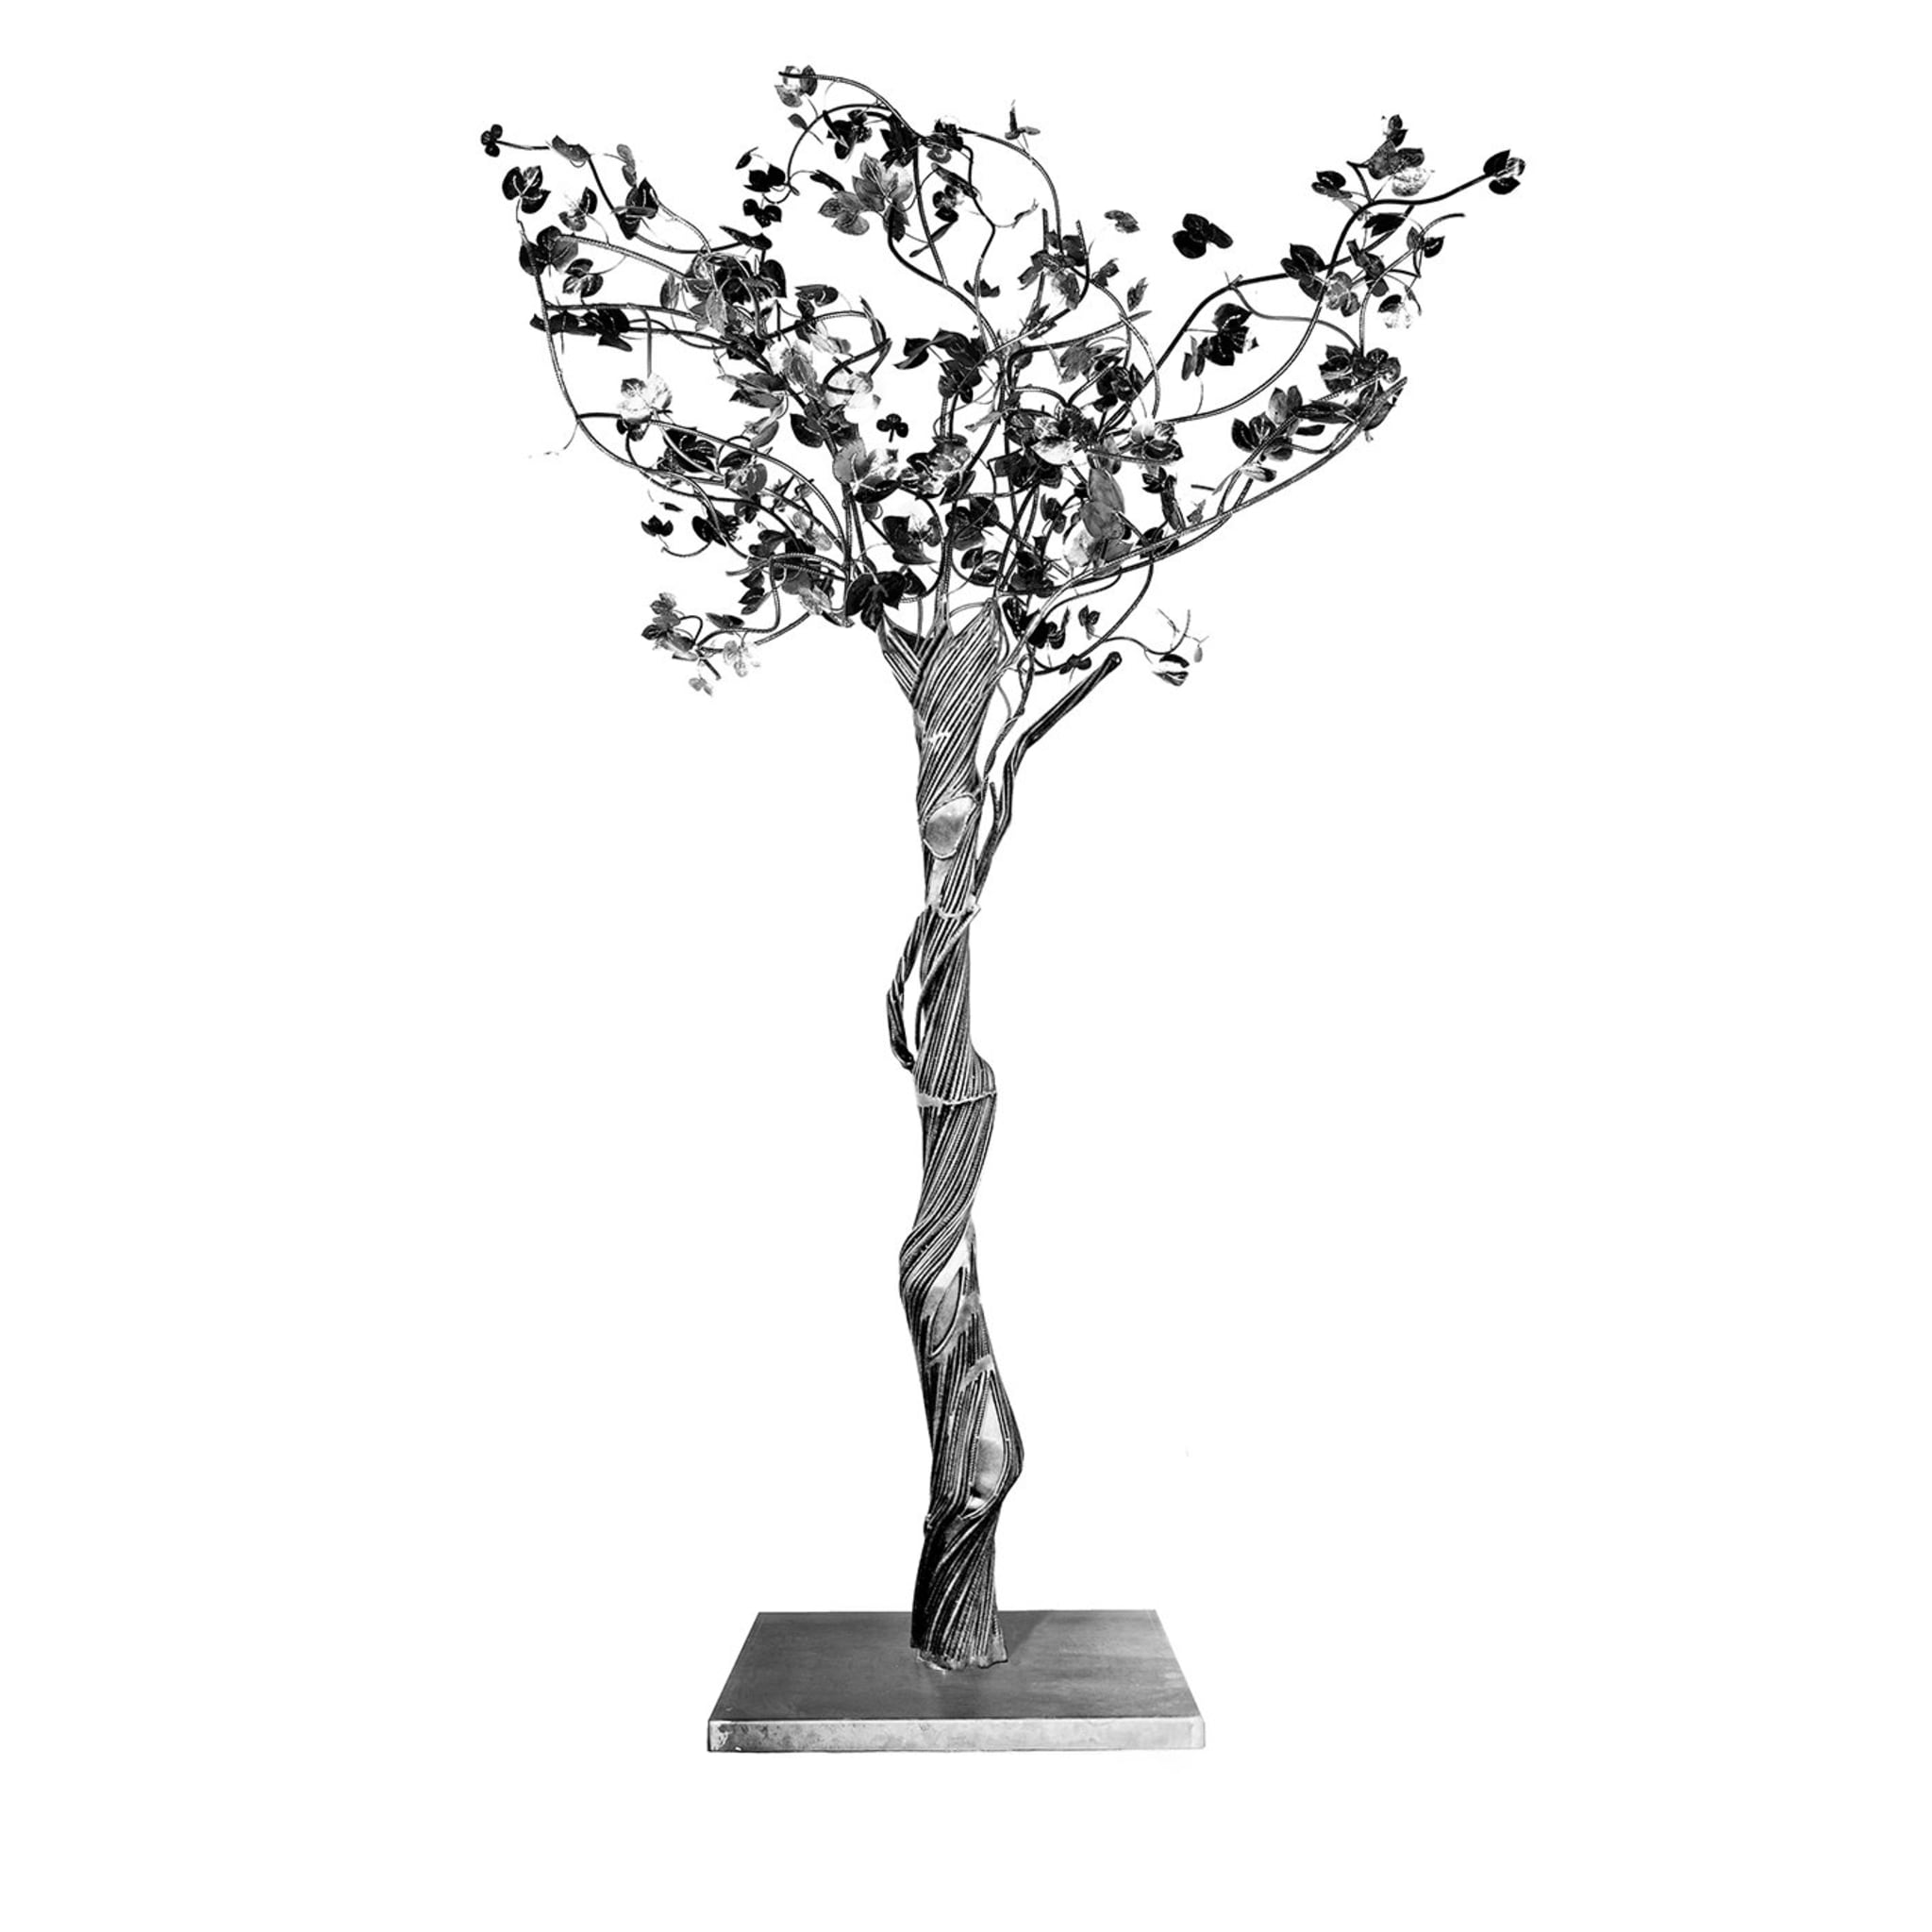 Escultura Arbor Vitae con elemento masculino - Vista principal